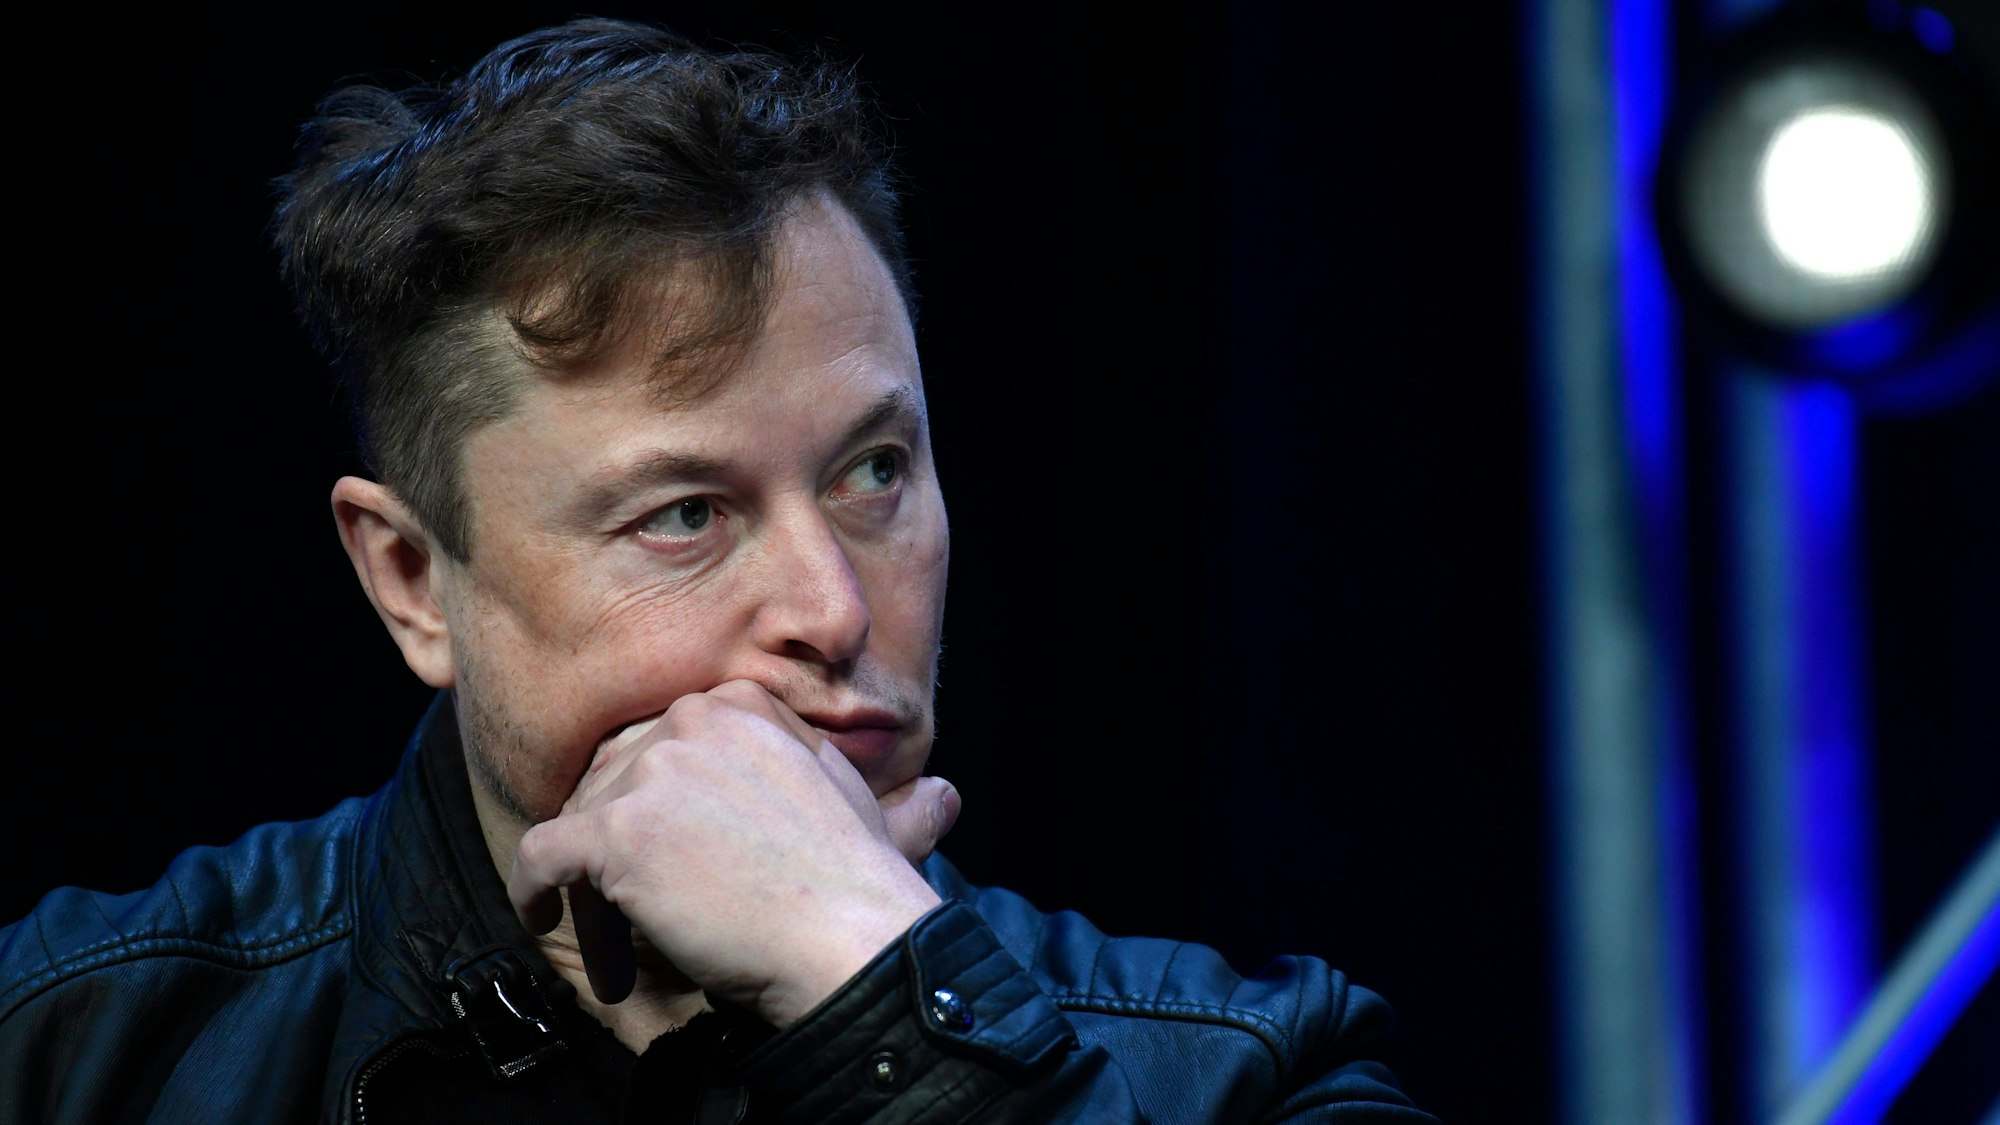 Elon Musk sitzt auf einer Bühne und wird in der Nahaufnahme gezeigt.